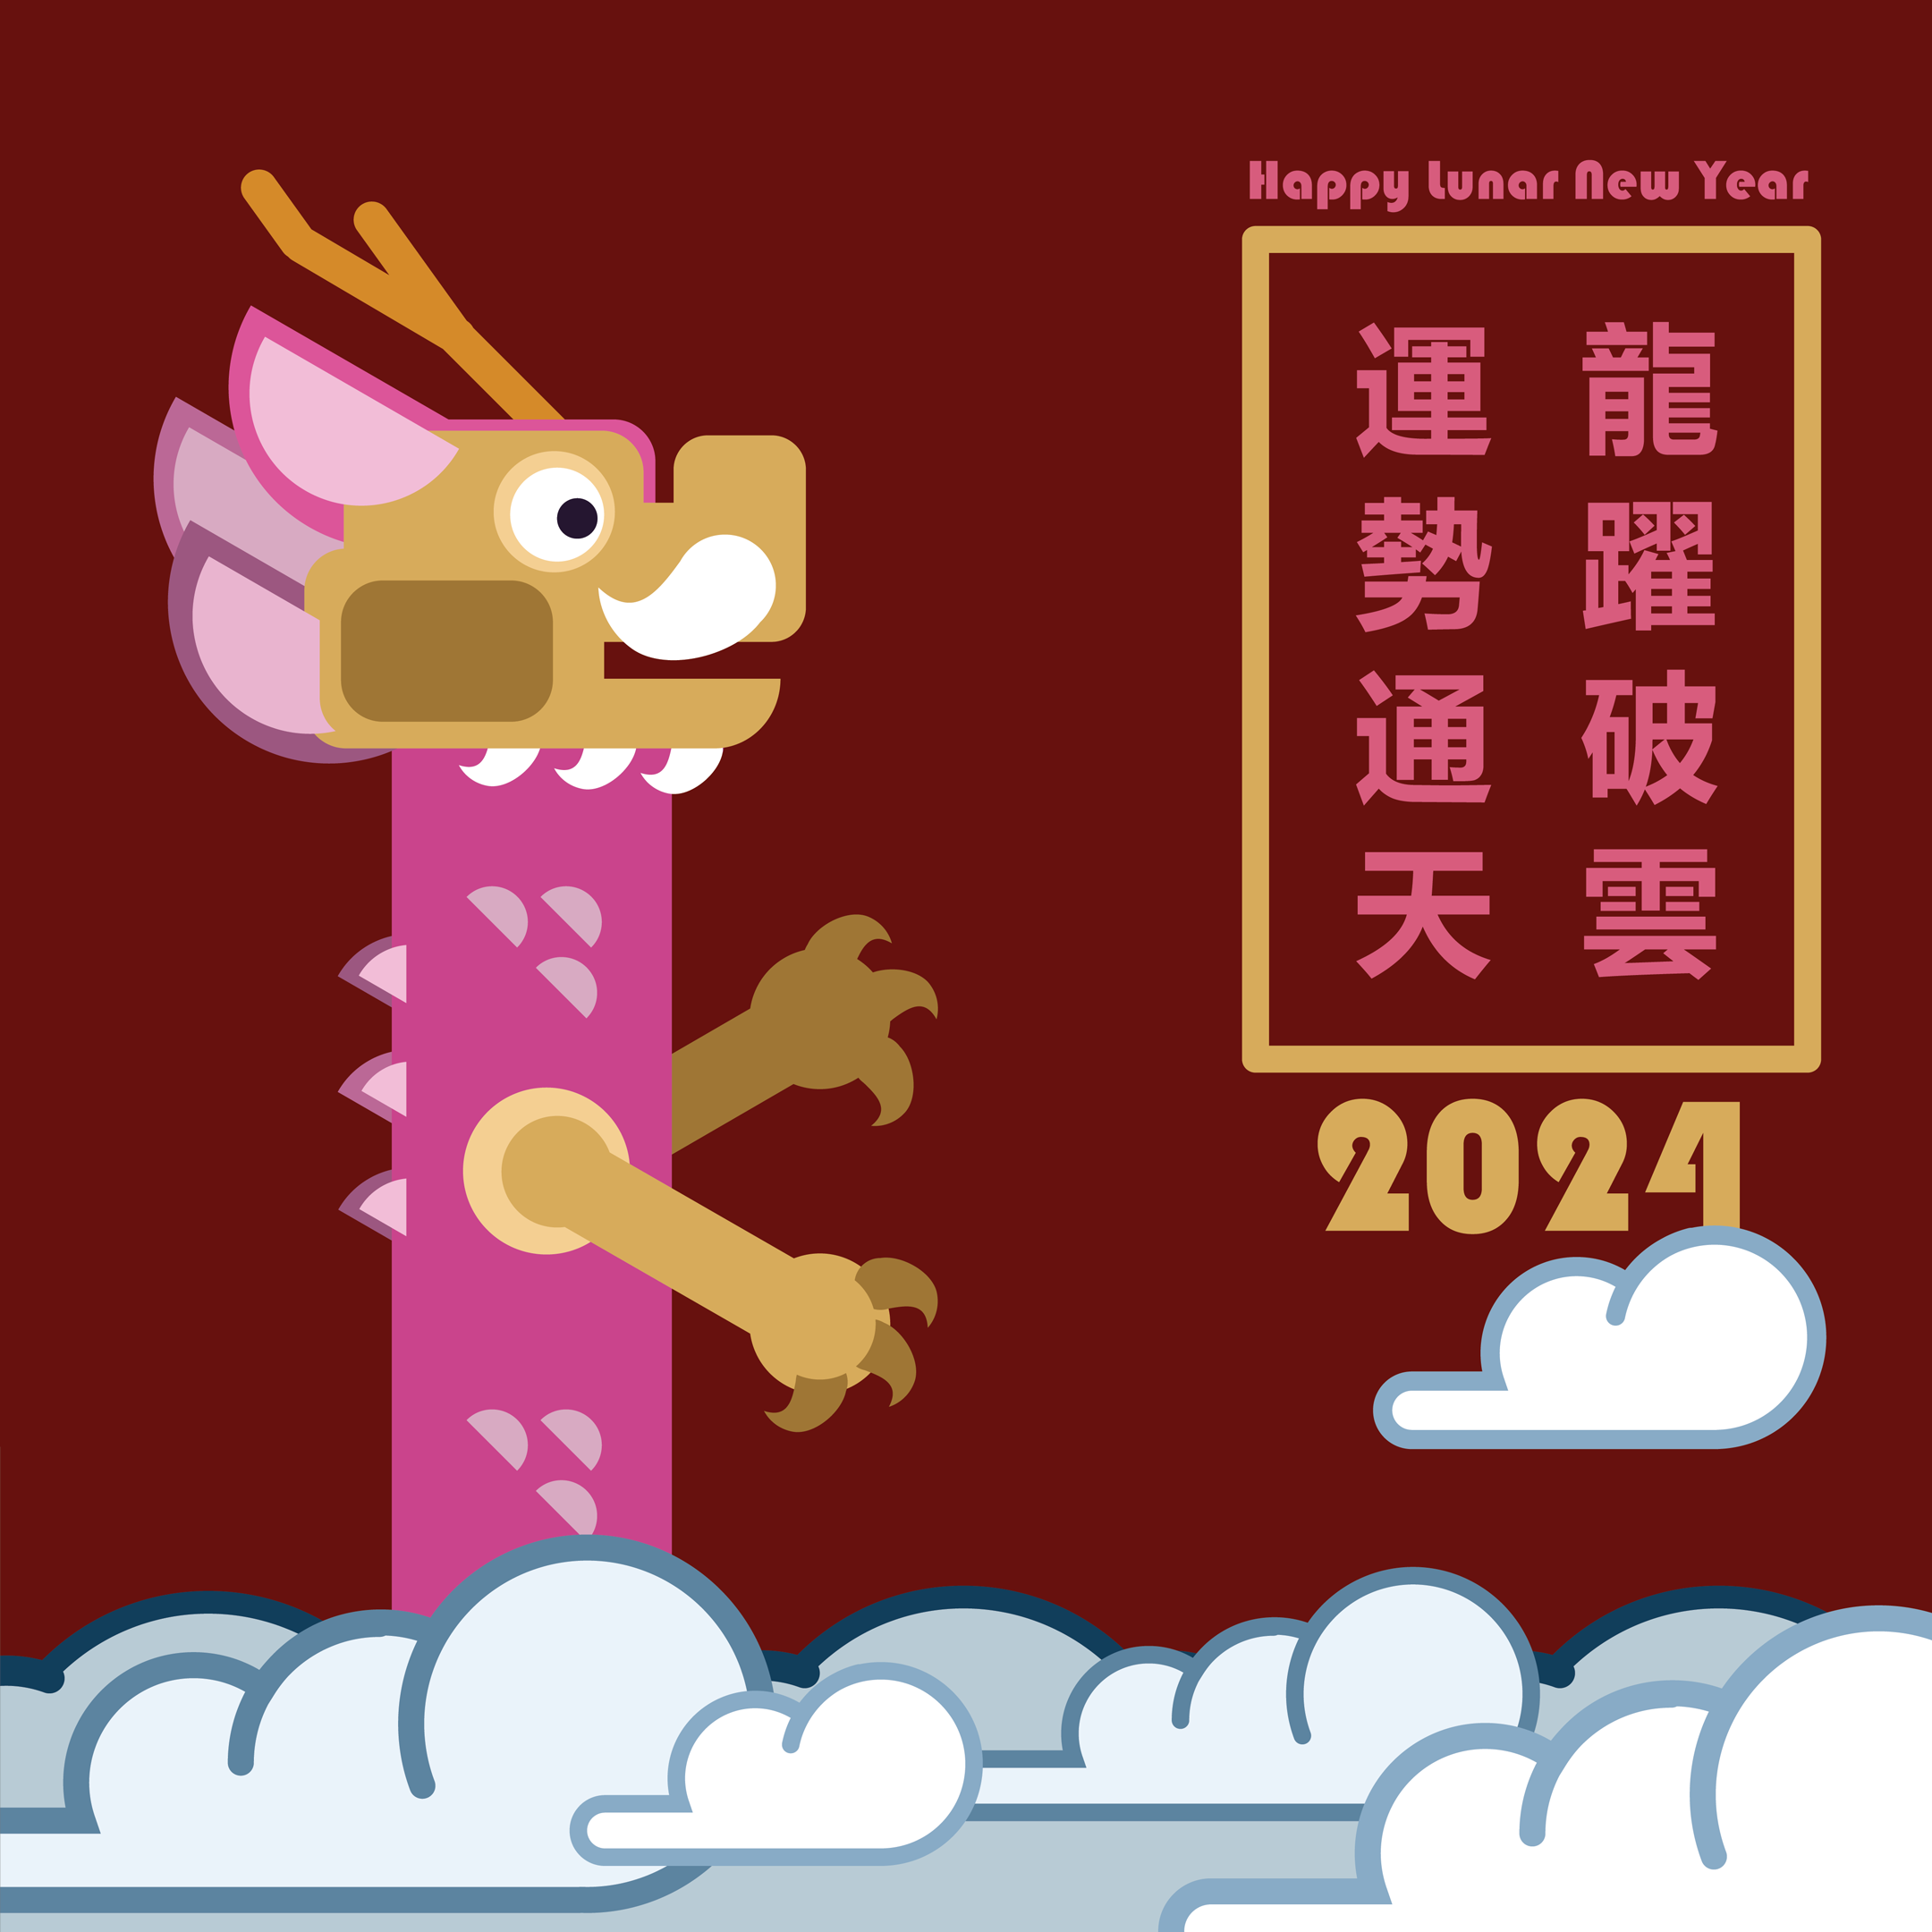 Lunar New Year Greeting Card Year of Dragon 2024